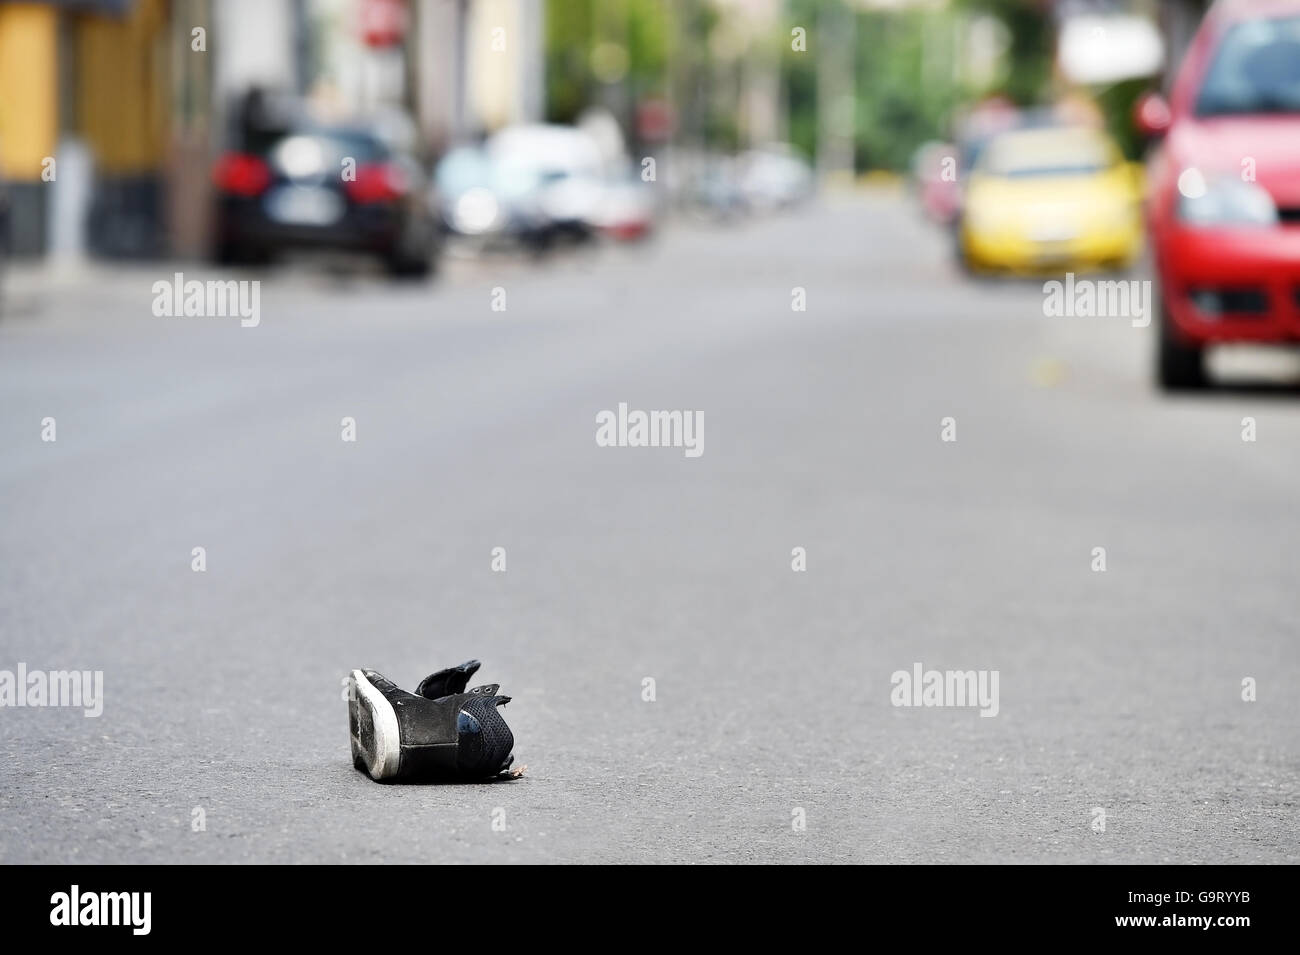 Schuh auf der Straße mit Autos im Hintergrund nach Opfer von Fahrzeug getroffen wurde Stockfoto